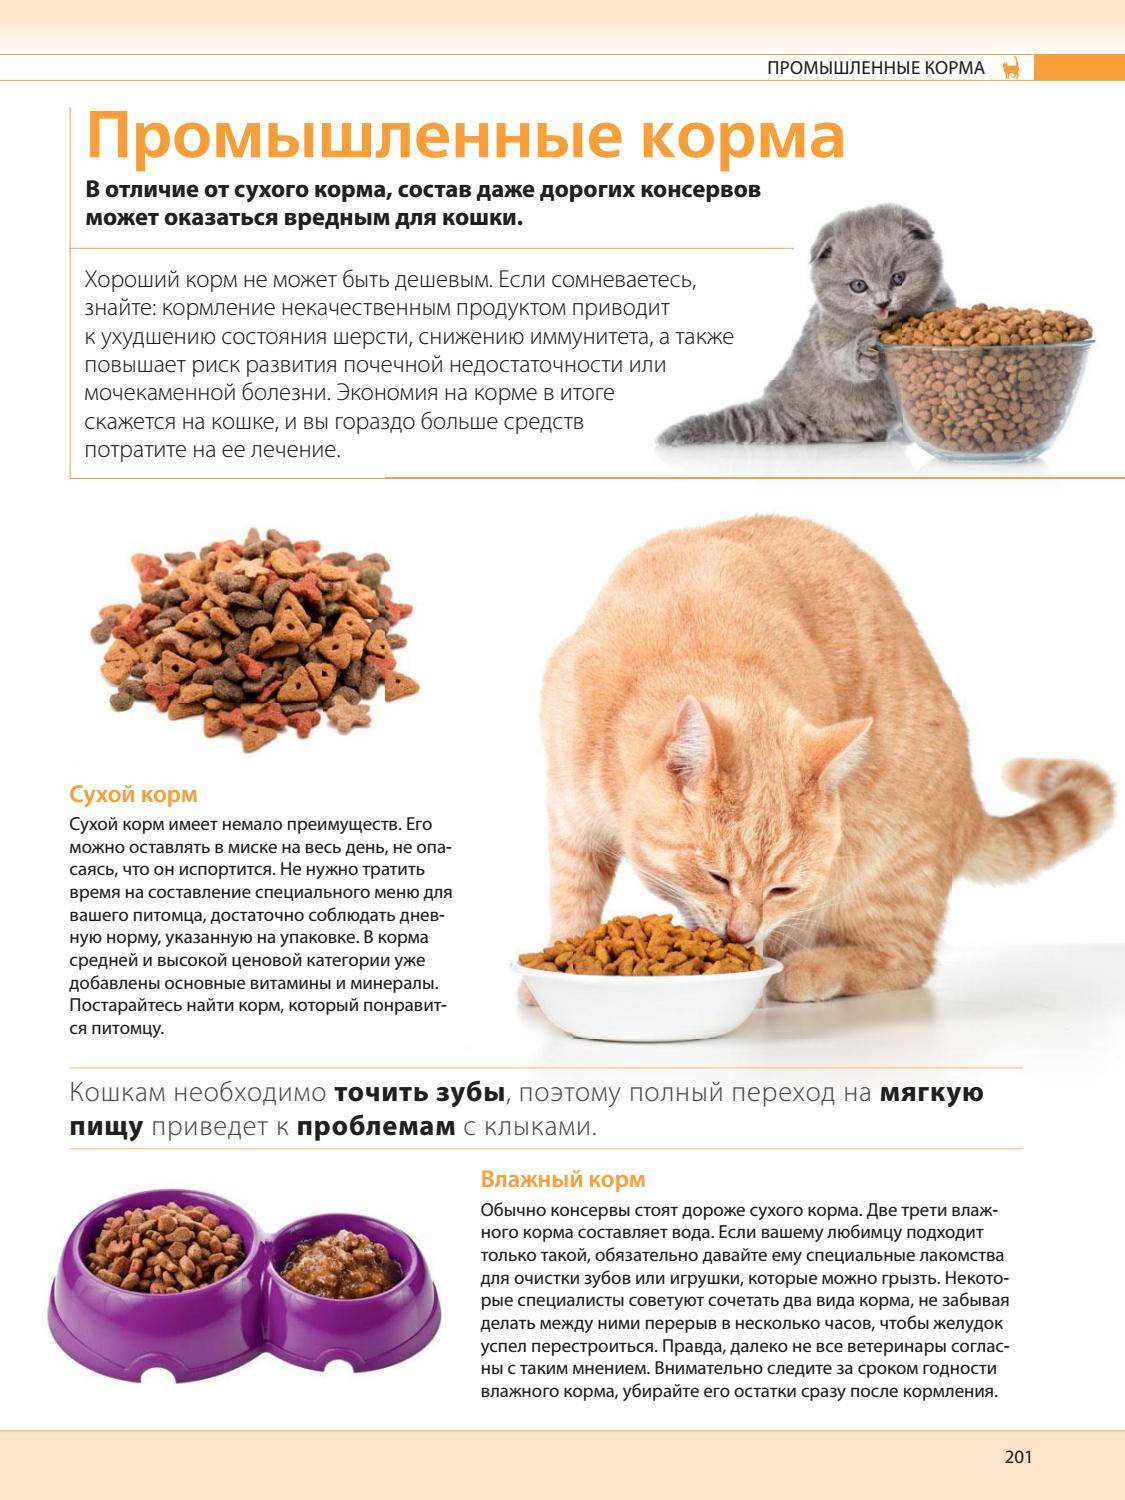 Как приучить котенка к сухому корму: с какого возраста, после влажного или натурального рациона